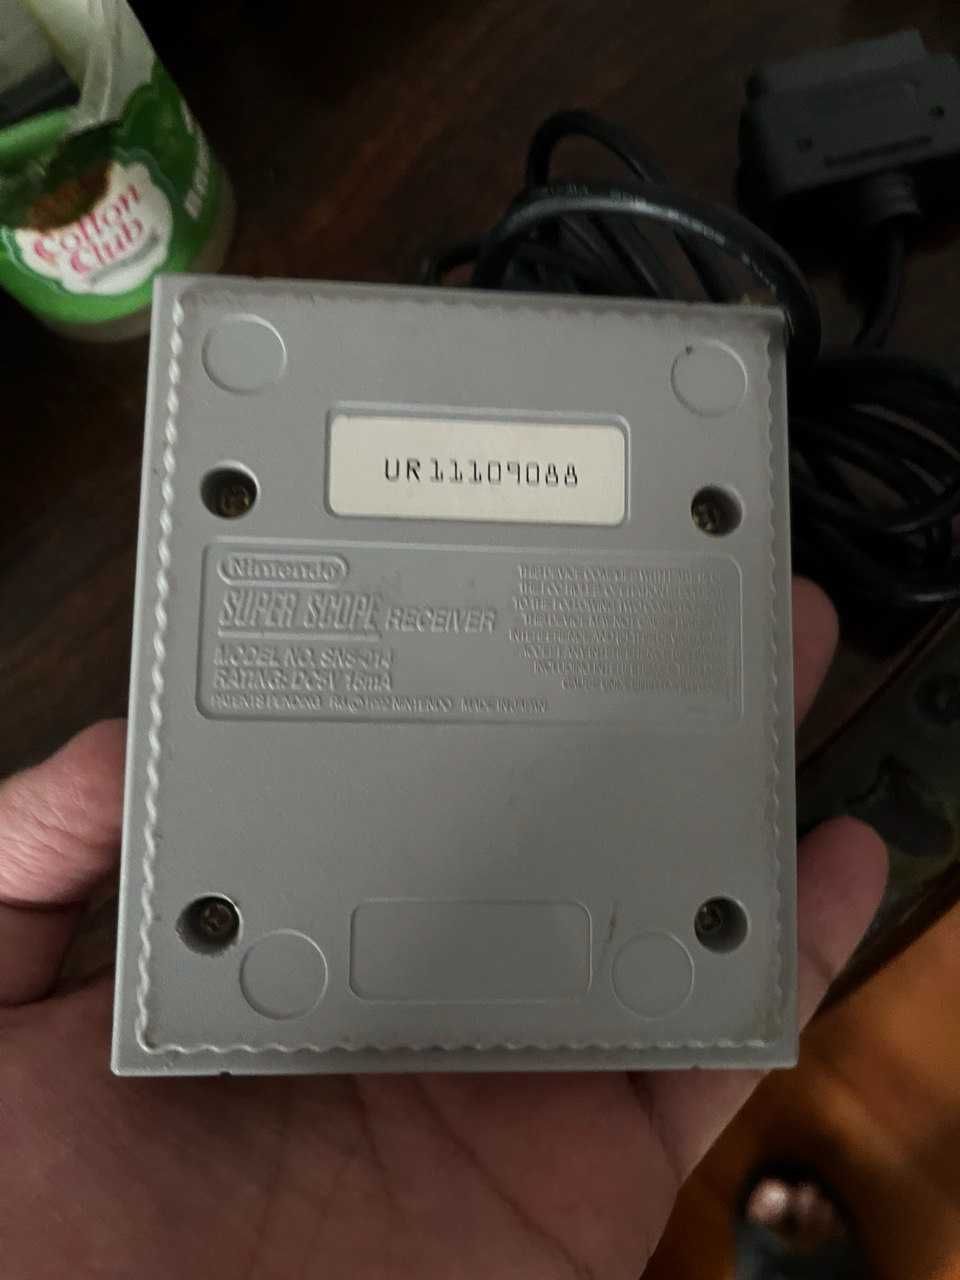 Super Scope Receiver SNS-014 for Original Super Nintendo (SNES)